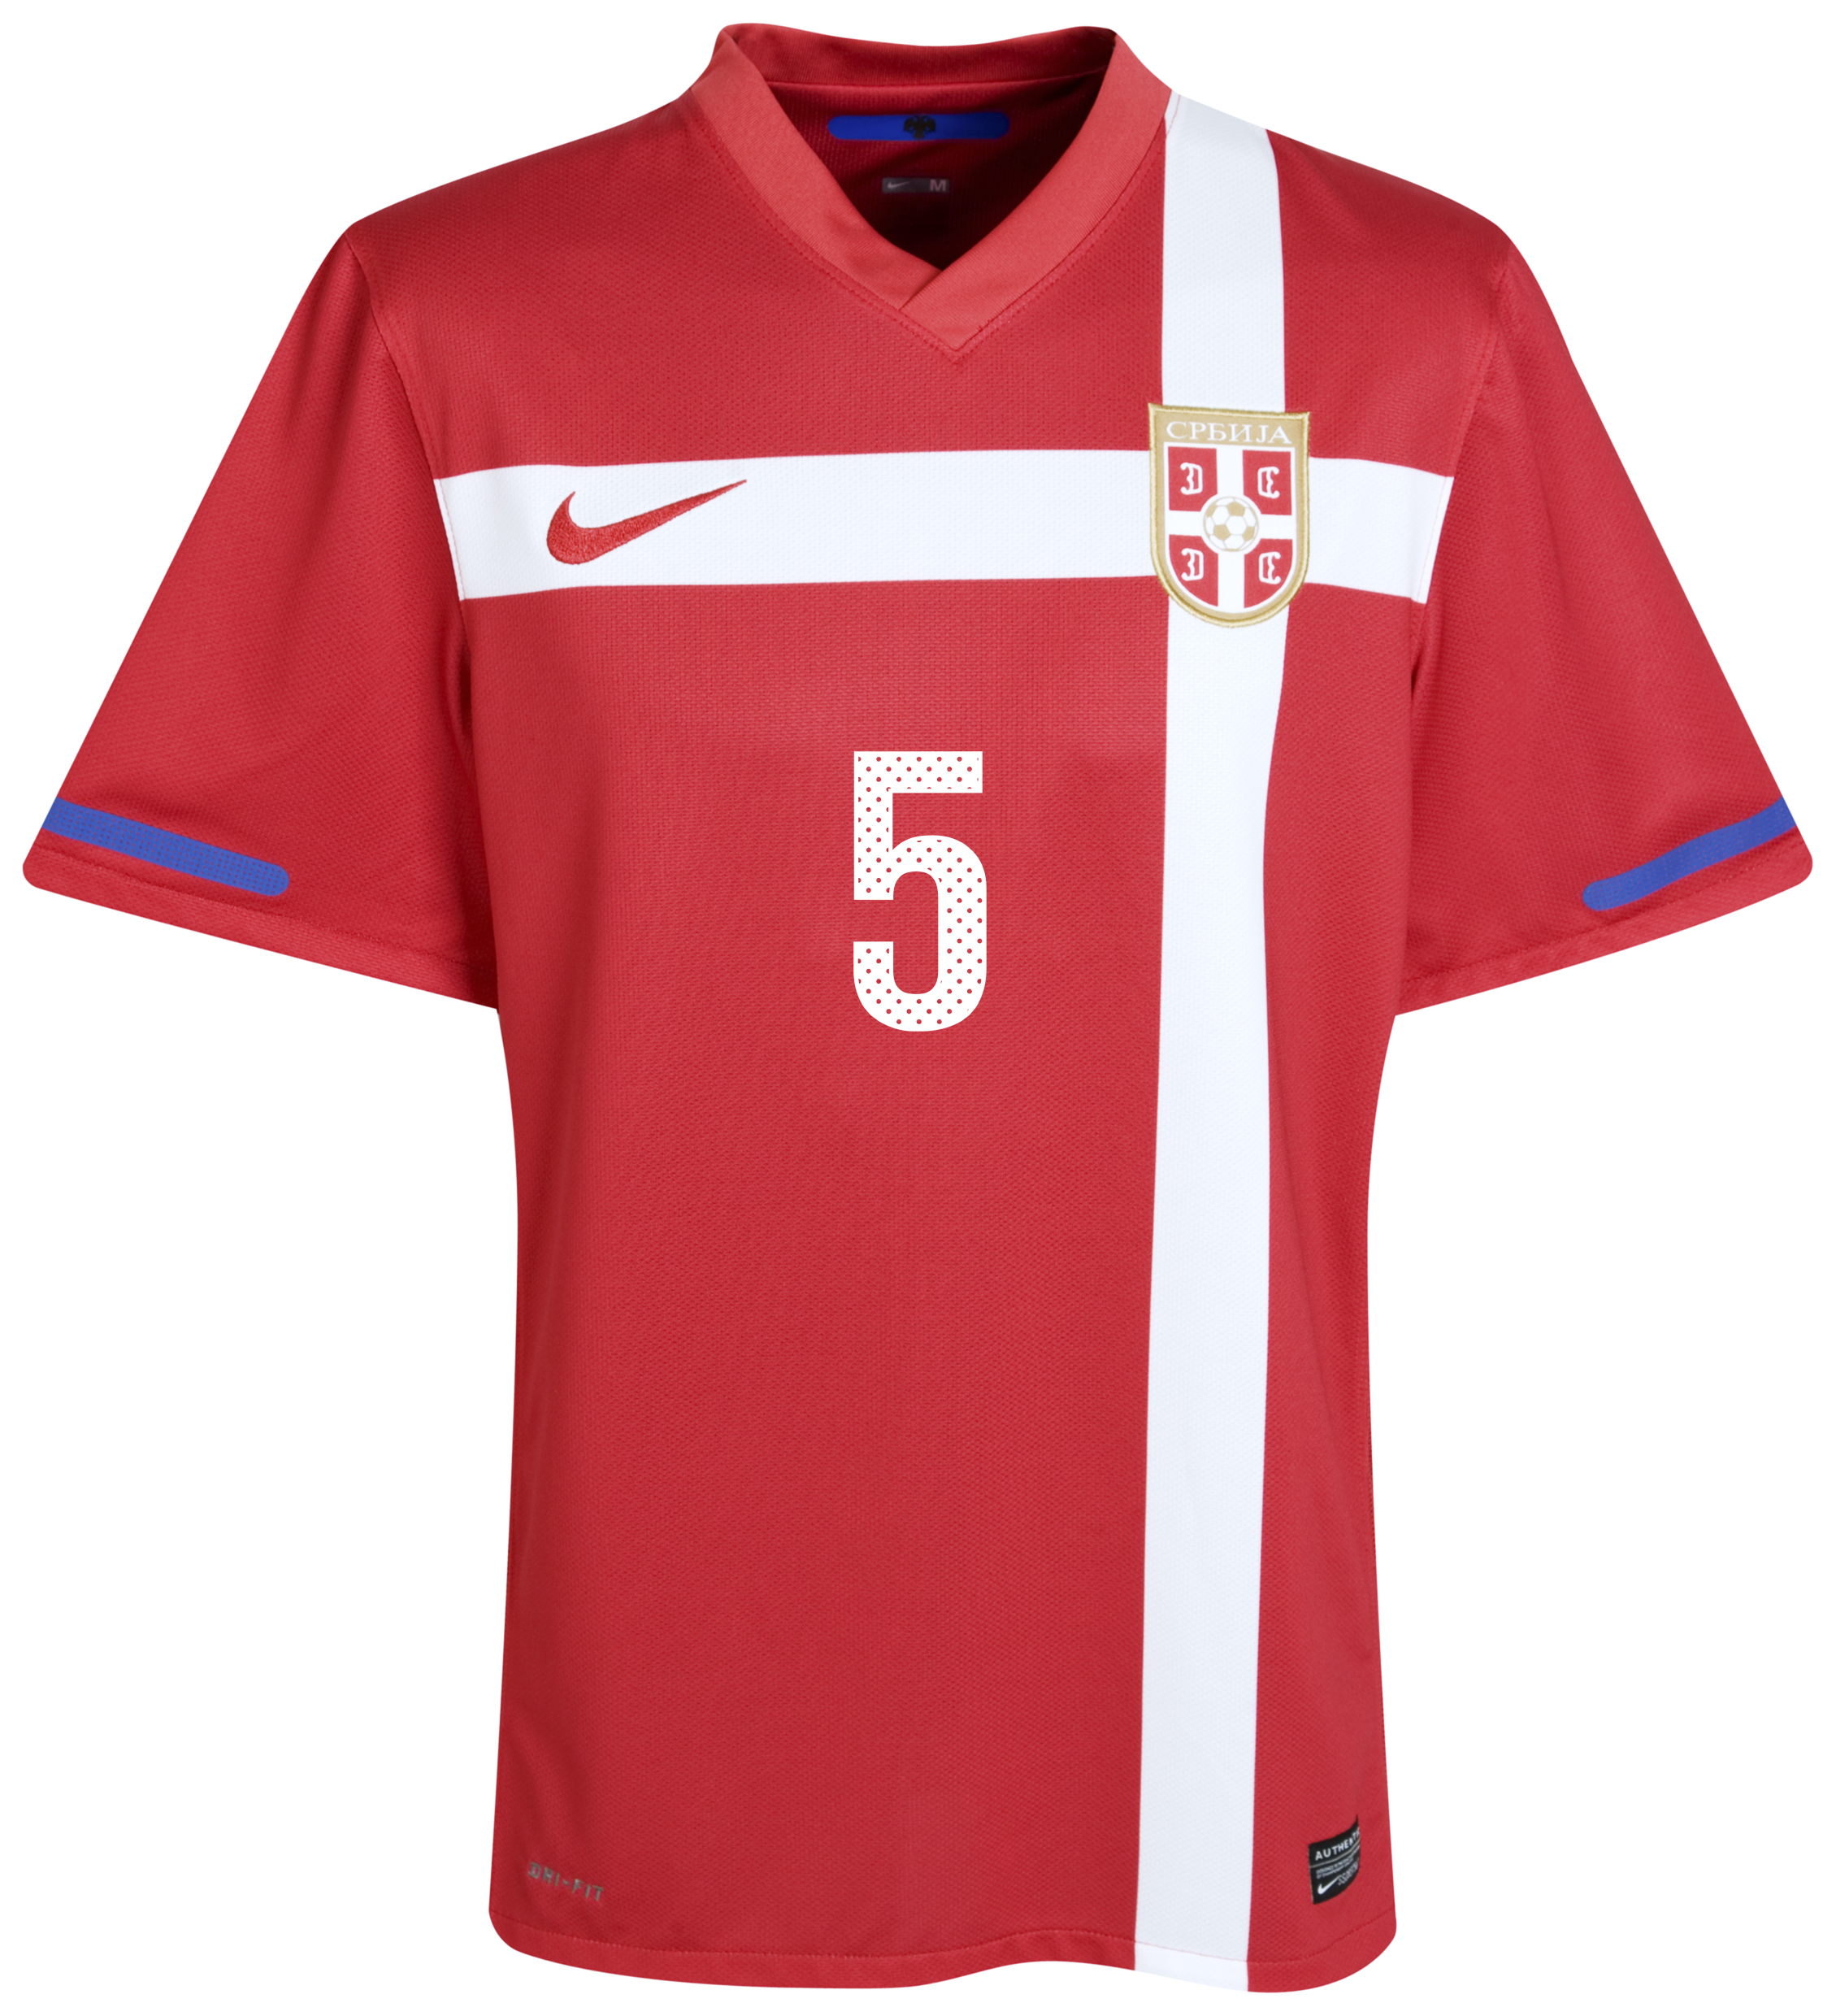 ملابس المنتخبات لكأس العالم ‎(2010)‎ Kb-71658a